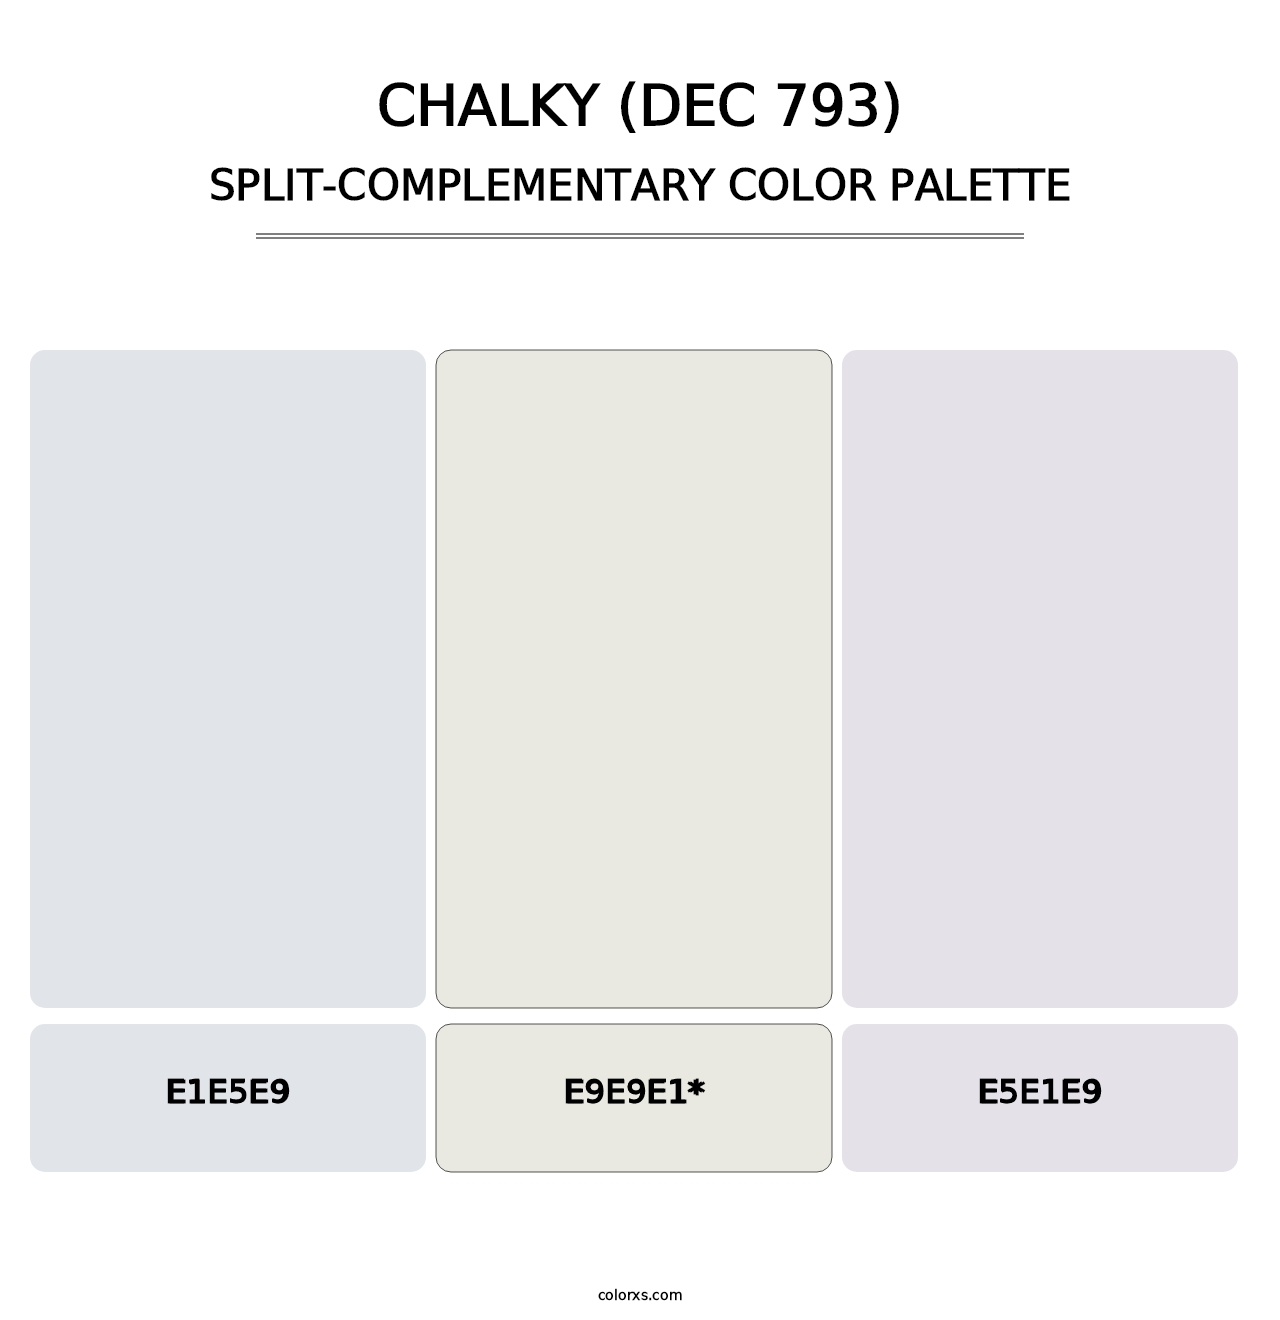 Chalky (DEC 793) - Split-Complementary Color Palette